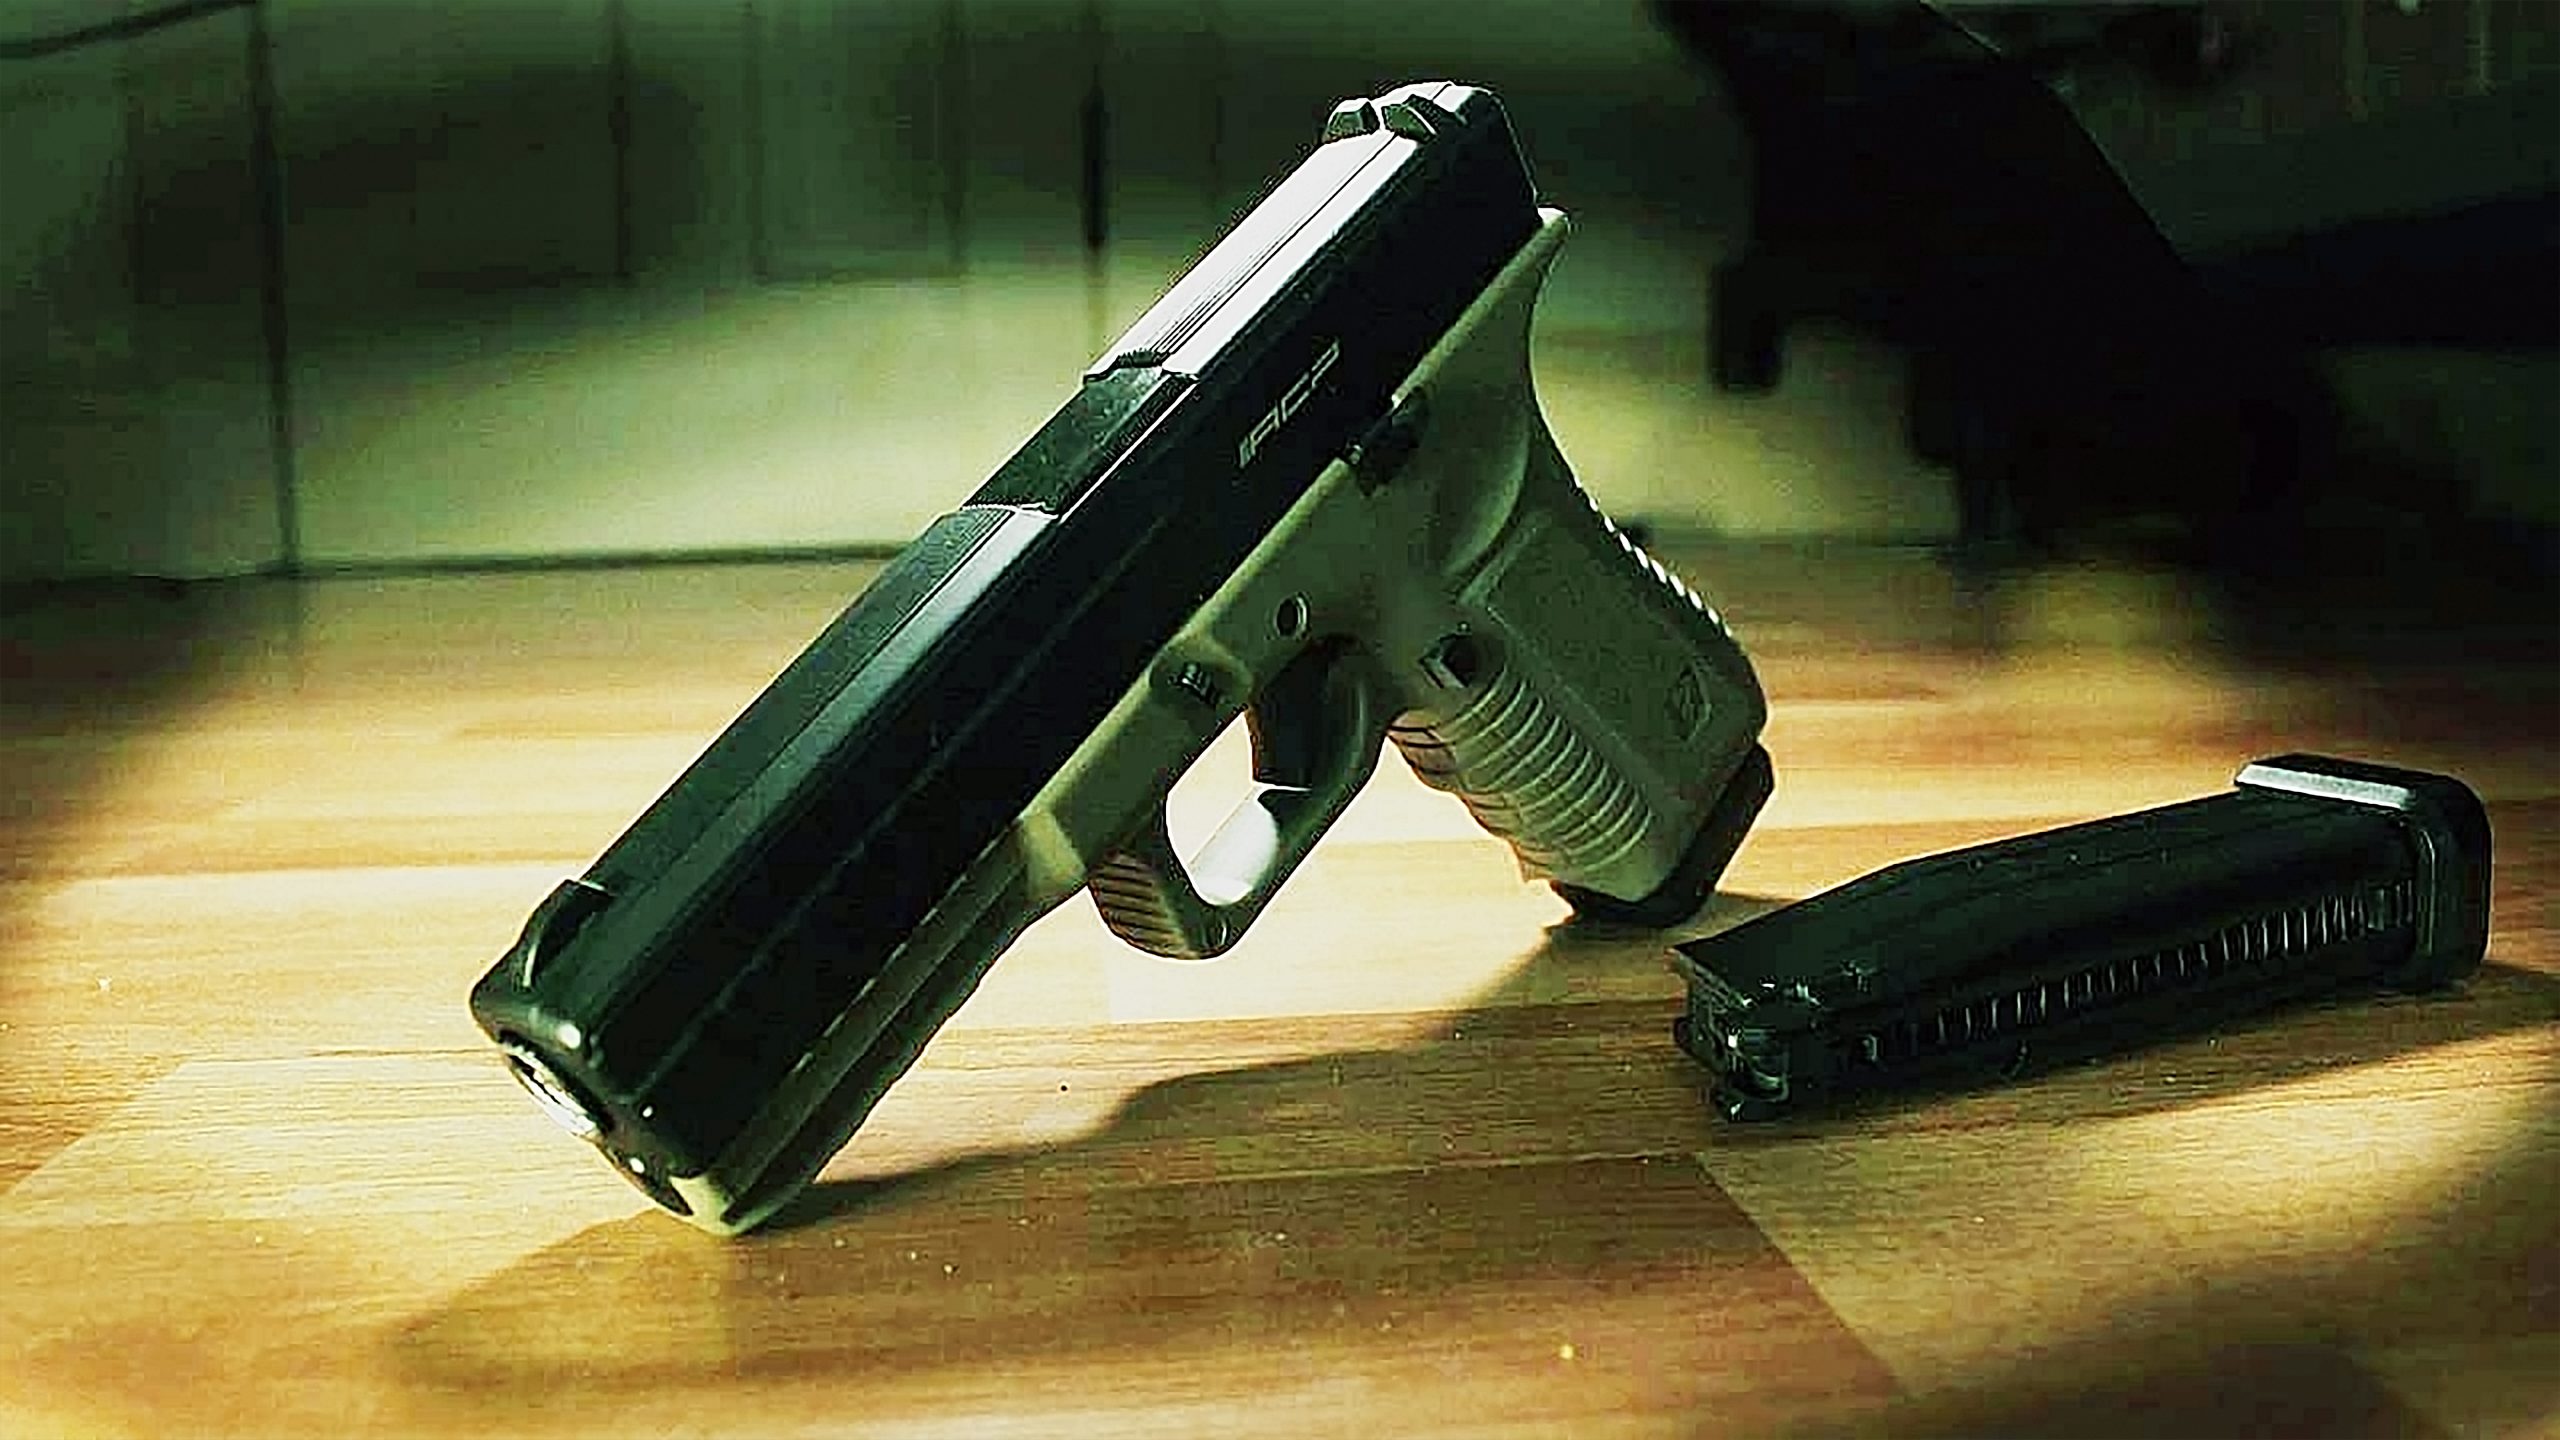 Temukan Pistol Di Pesta Ultah Ke-3, Balita Tewas Tembak Dirinya Sendiri